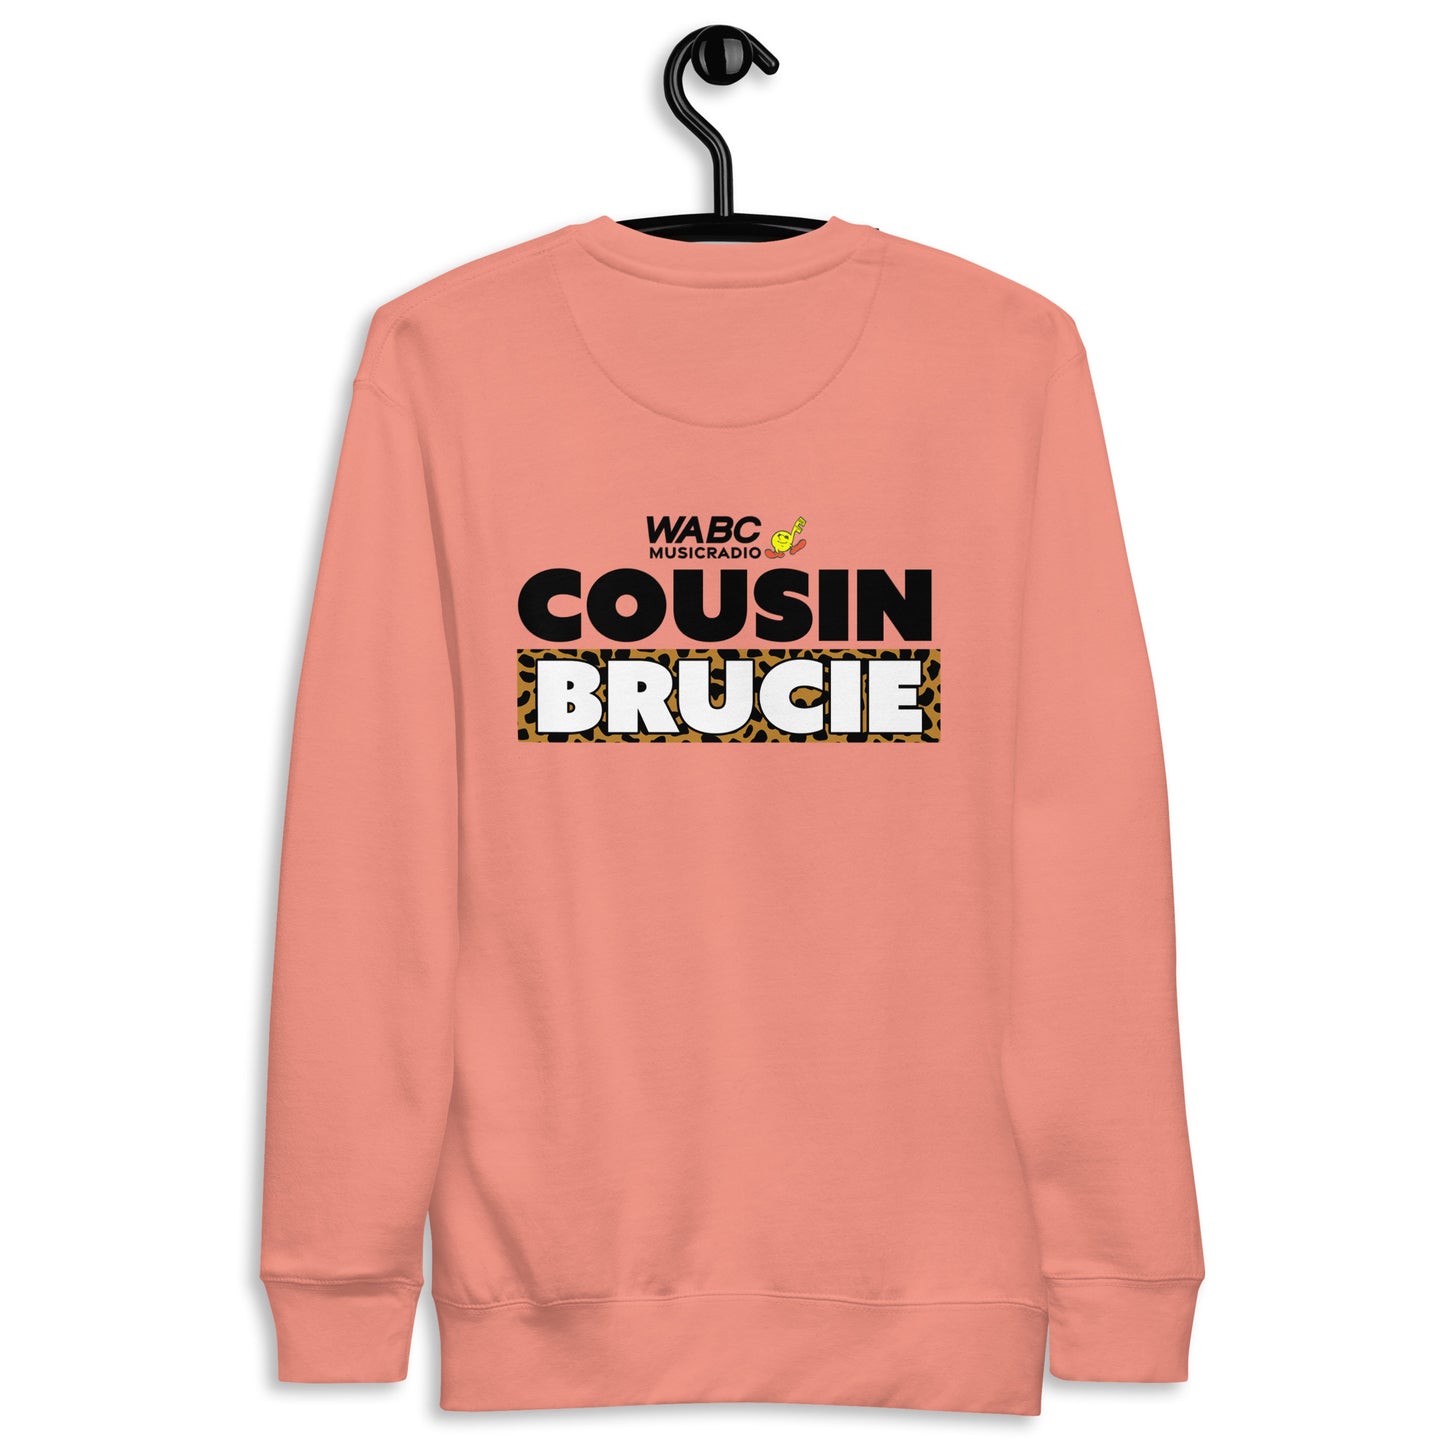 Cousin crew Unisex Premium Sweatshirt